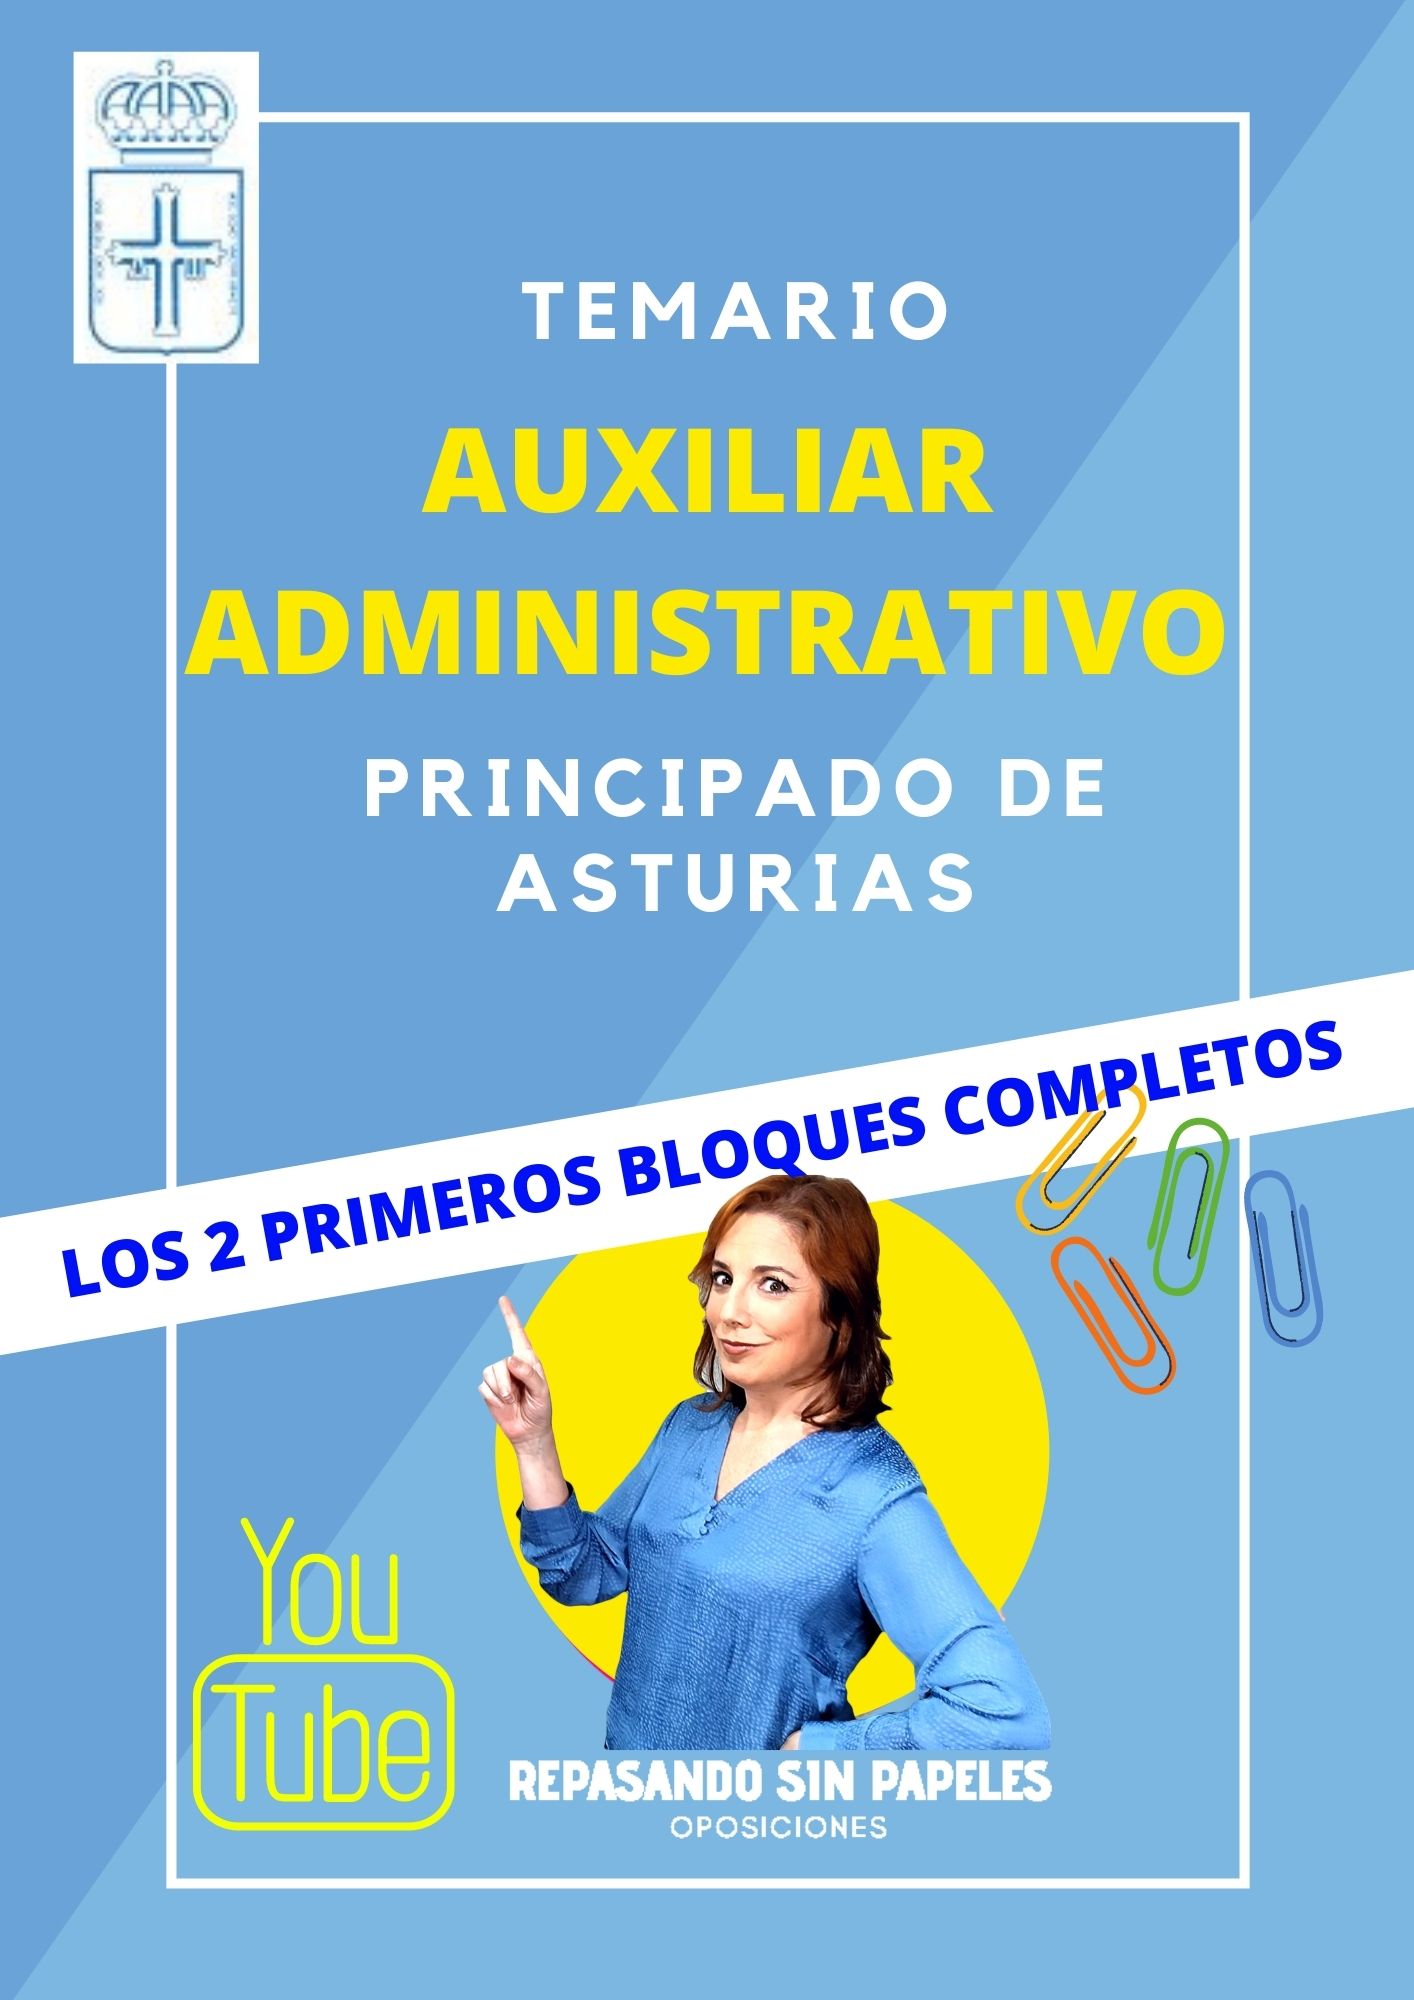 descargar temario auxiliar administrativo asturias en pdf